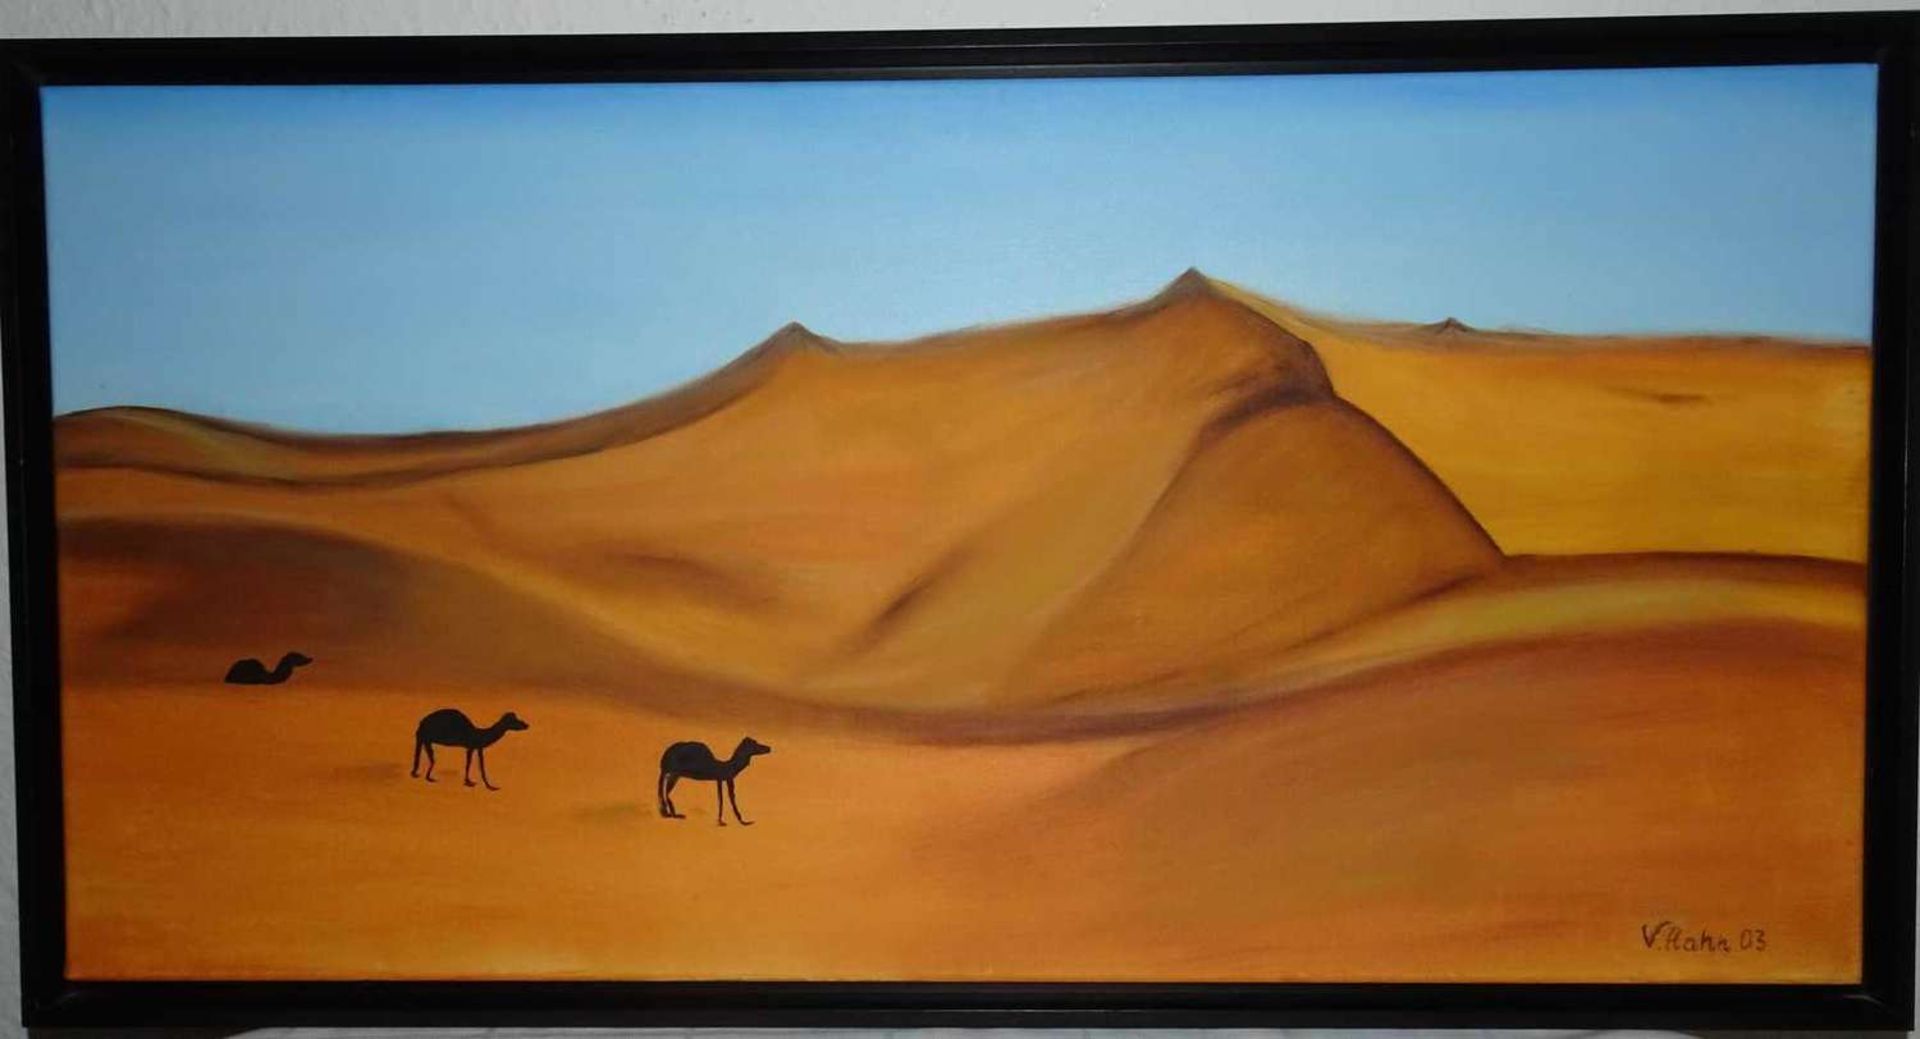 Veronika Hahn, Ölgemälde auf Leinwand "Wüste mit Kamelen", rechts unten Signatur V.Hahn03. Gerahmt.